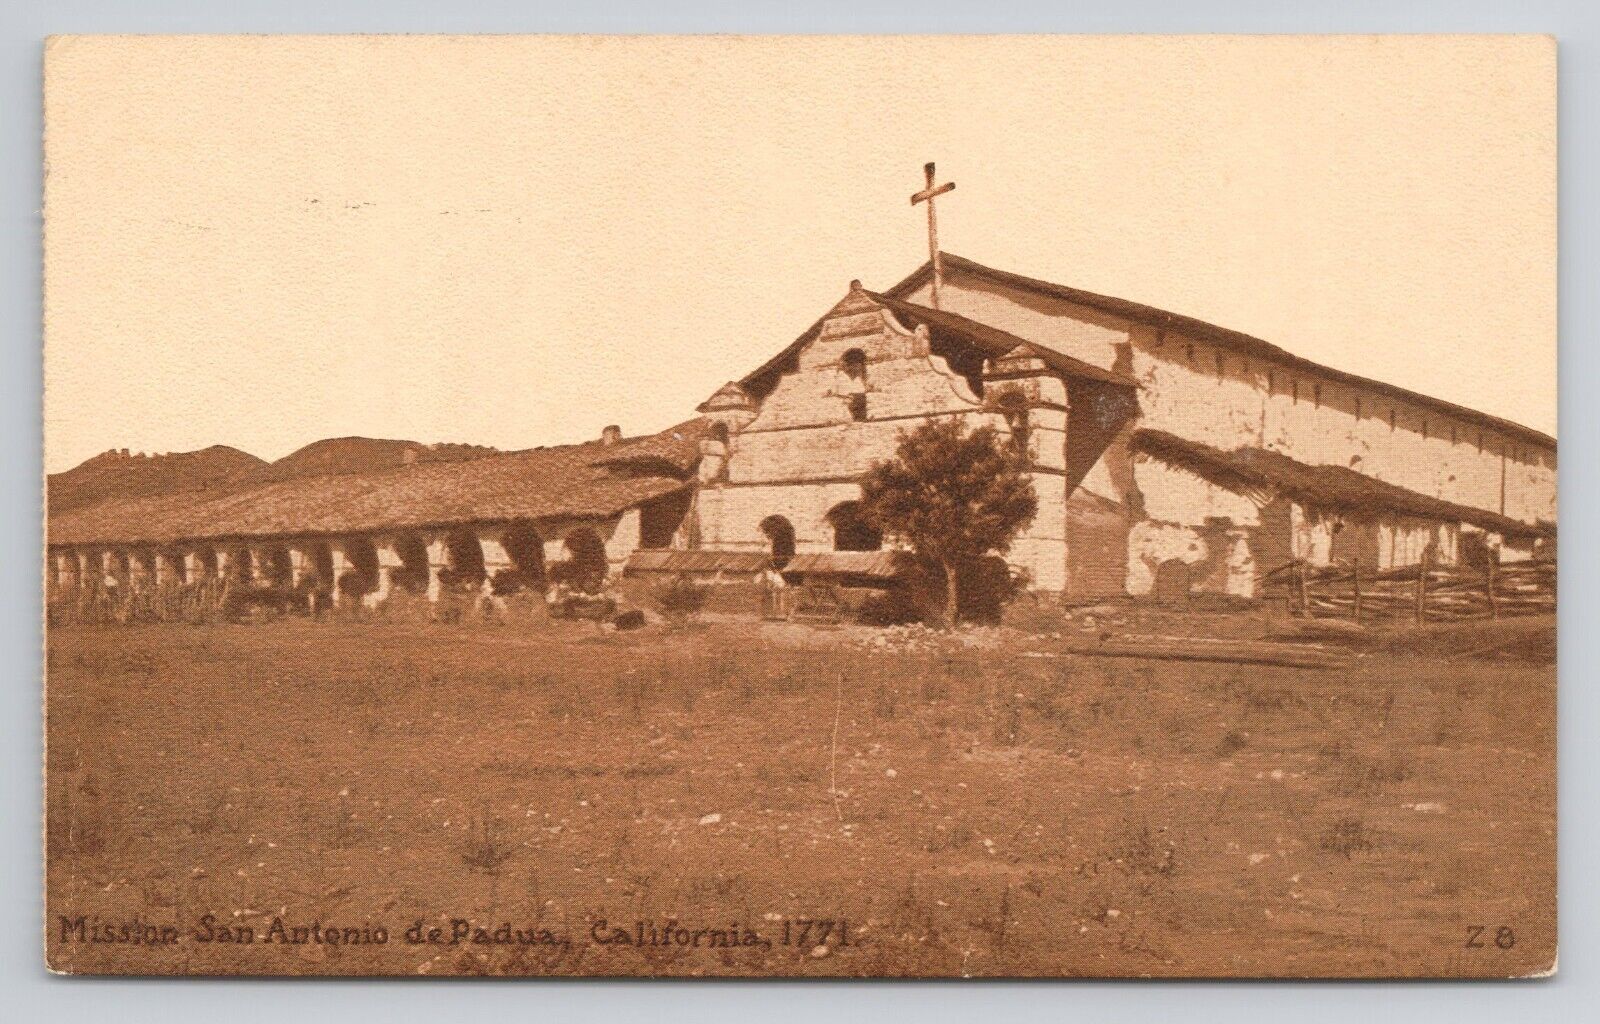 Mission San Antonio de Padua California c1910 Antique Postcard